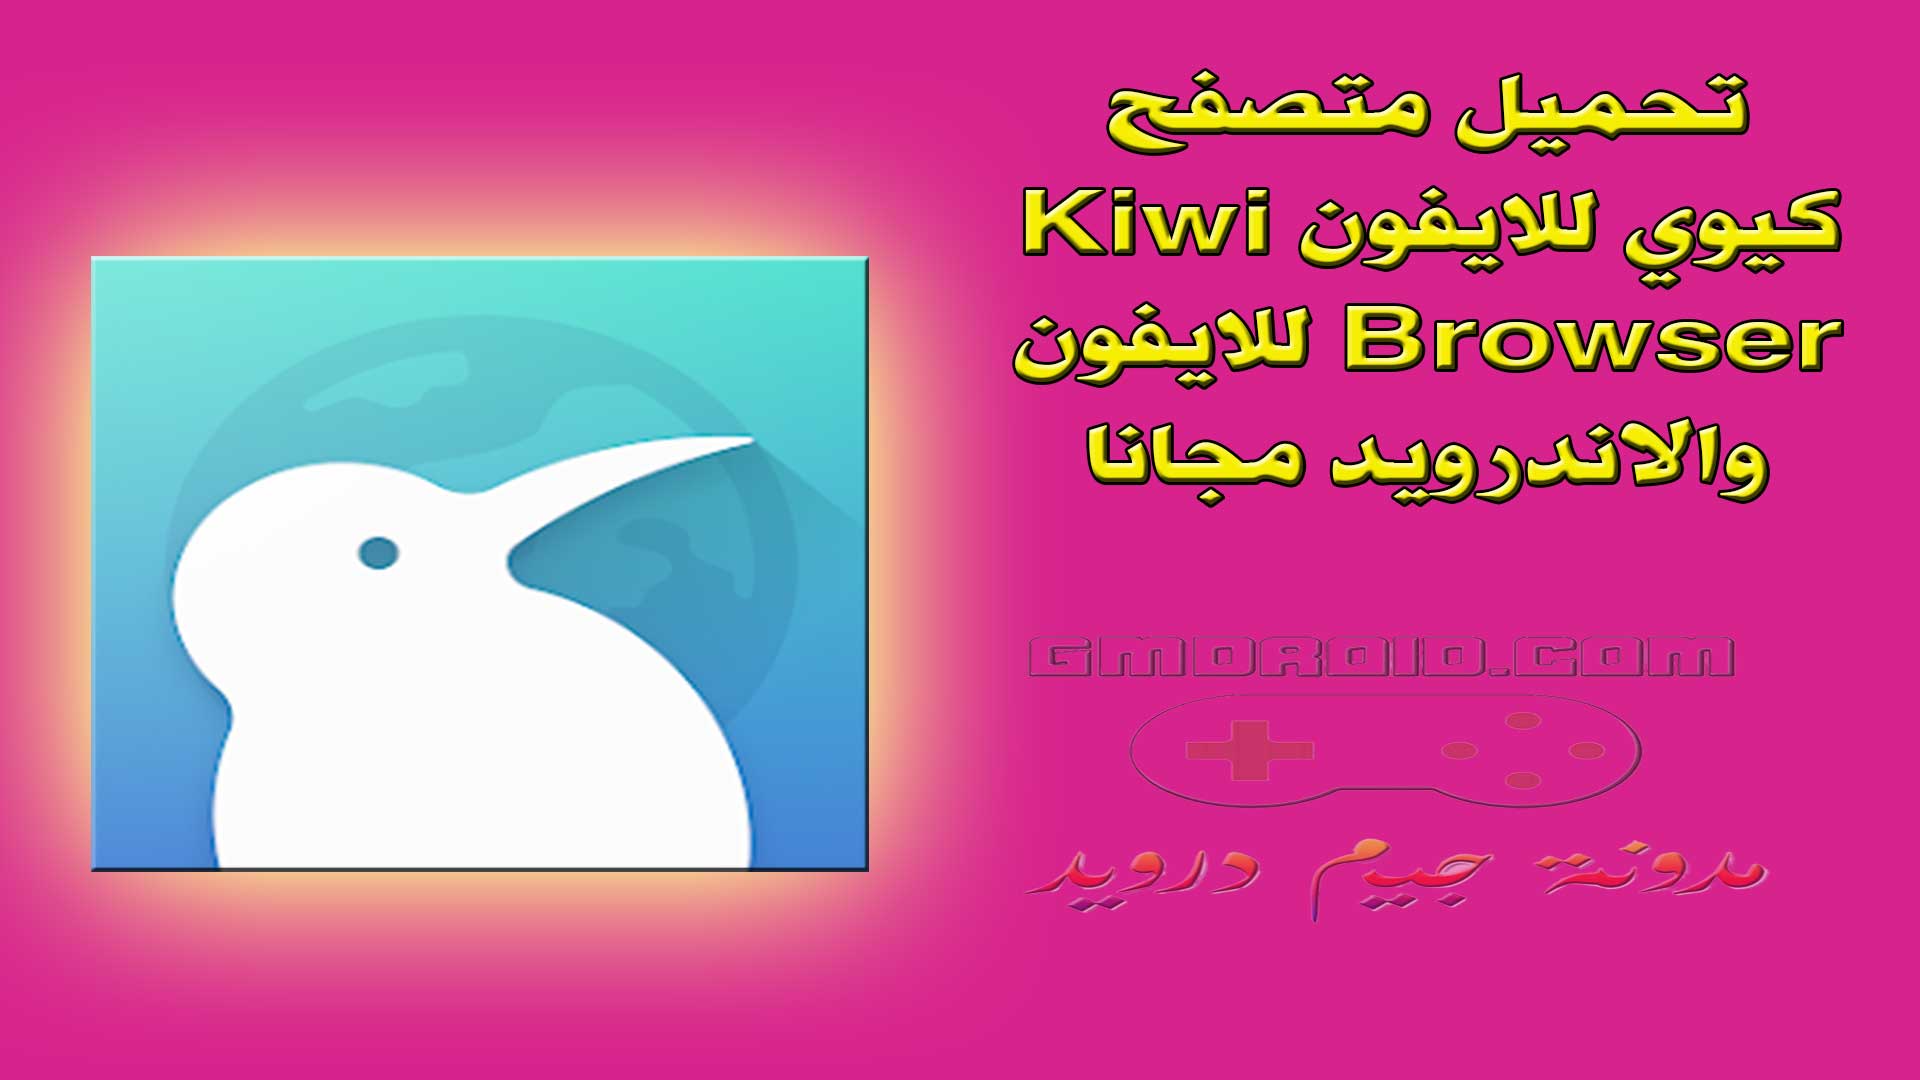 تحميل متصفح كيوي للايفون Kiwi Browser للايفون والاندرويد مجانا